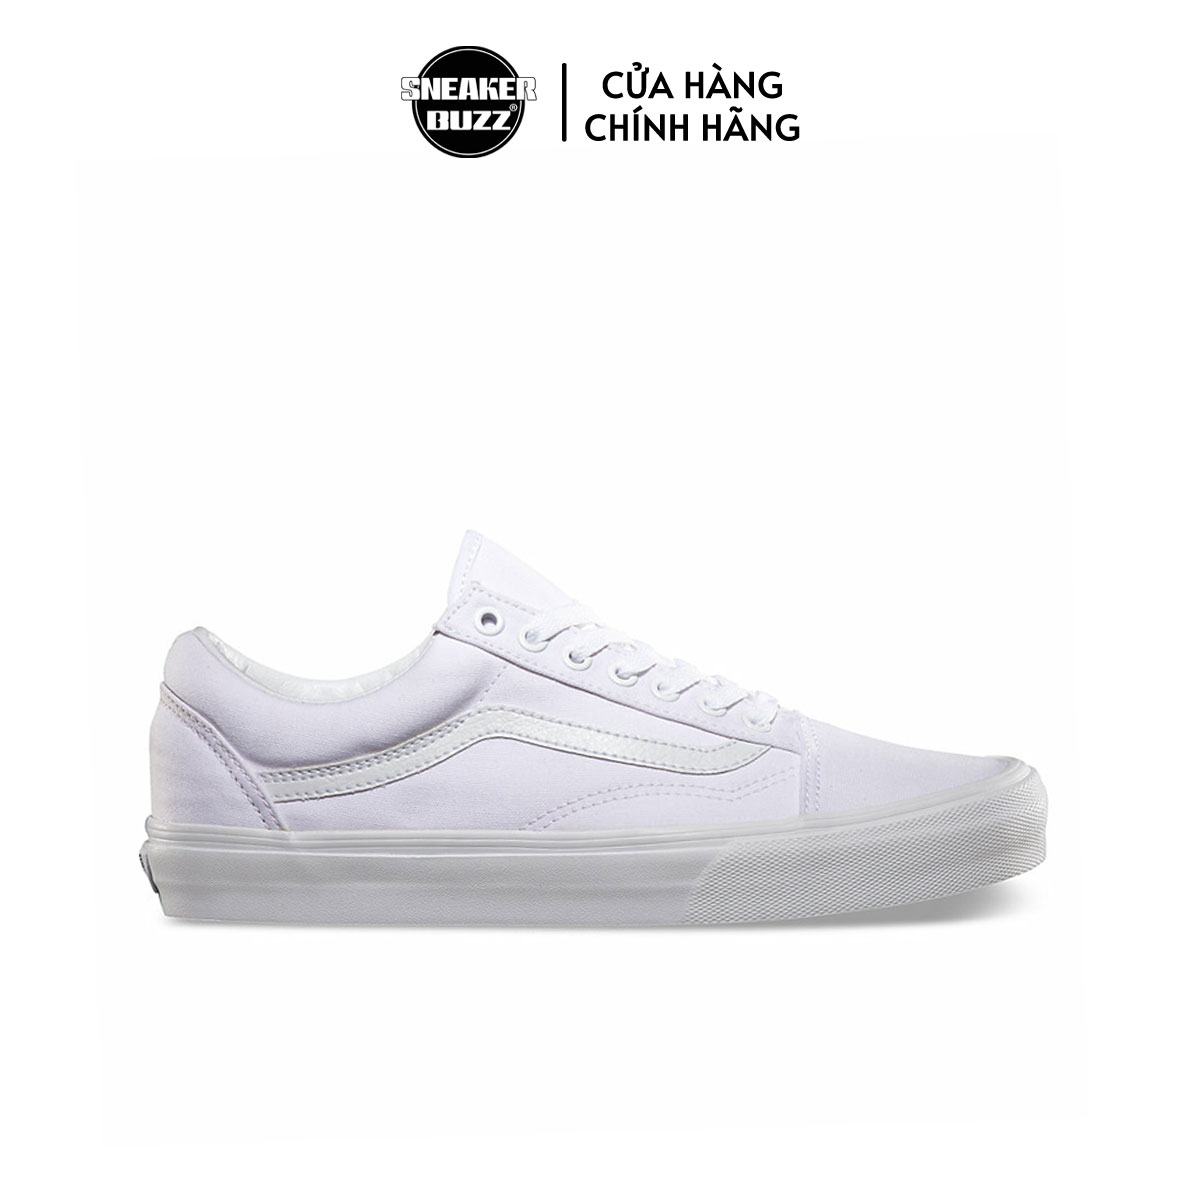 Giày Sneaker Unisex Old Skool Vans VN000D3HW00 - White